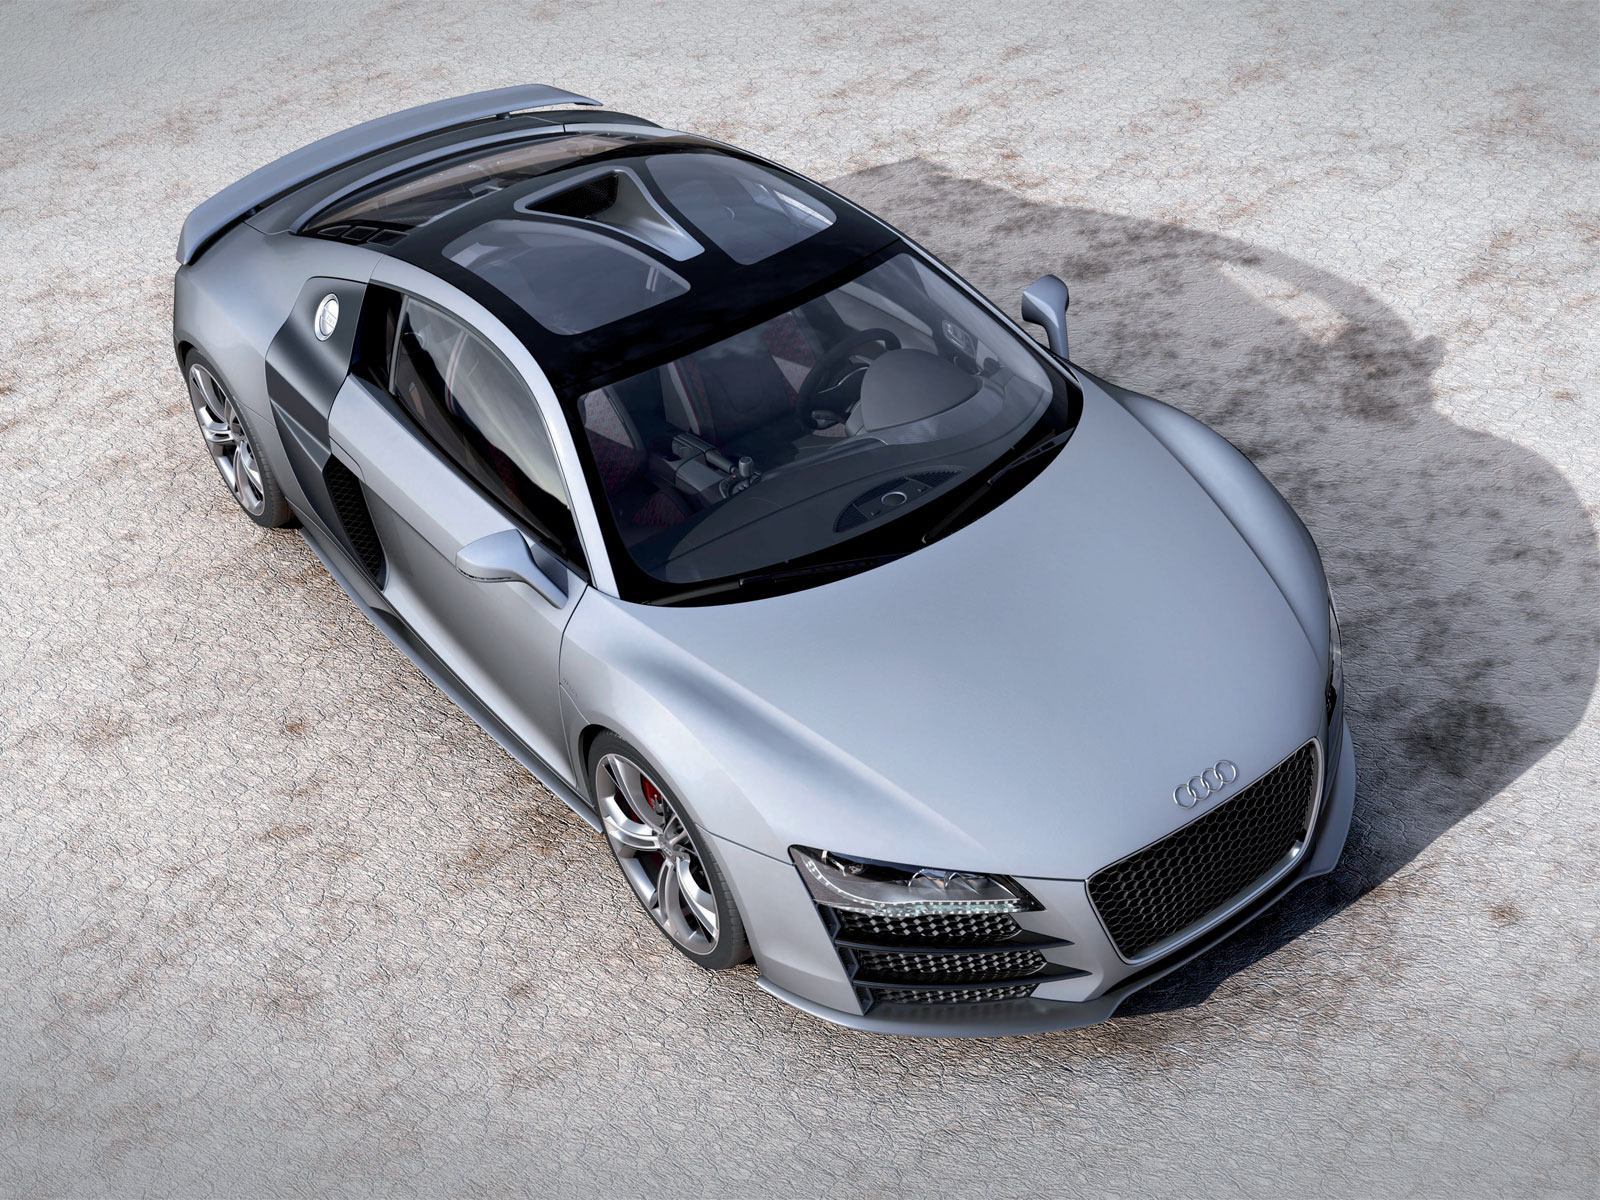 [Audi_R8_V12_TDI_Concept_Car.jpg]